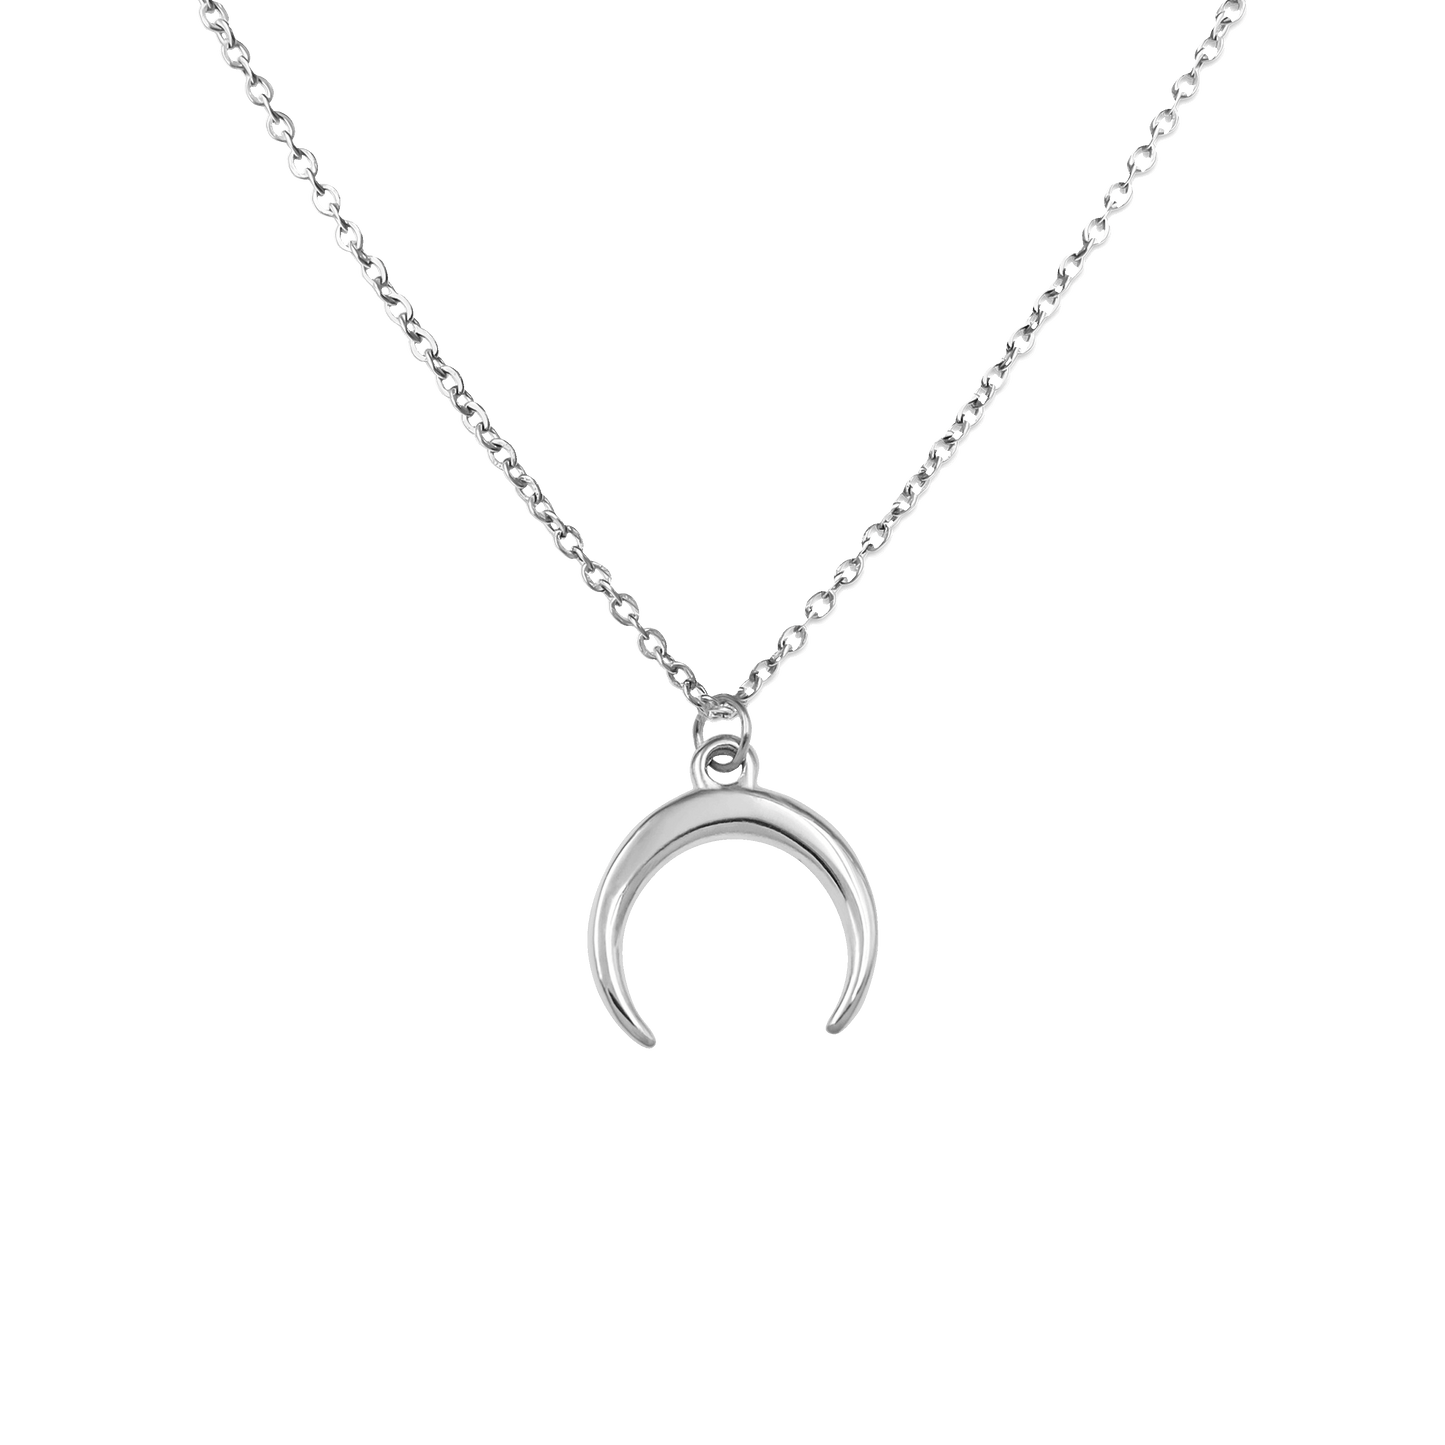 Lua Necklace Silver